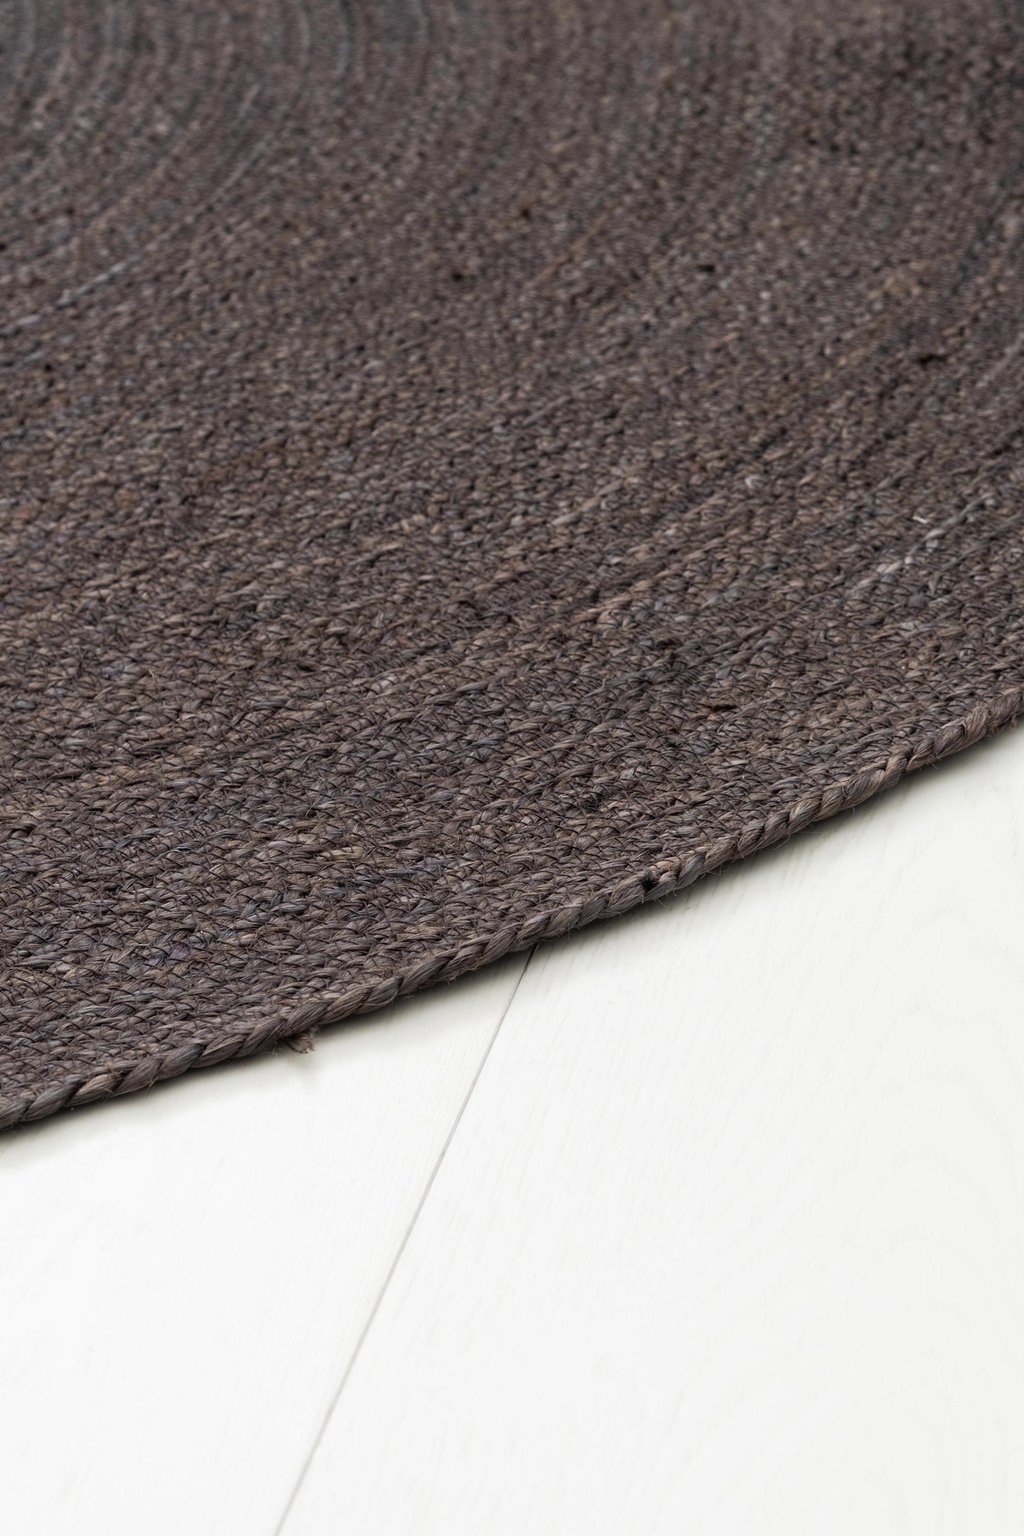 FanniK Rauha matto pyöreä ⌀ 100 cm, tumman harmaa / hiili